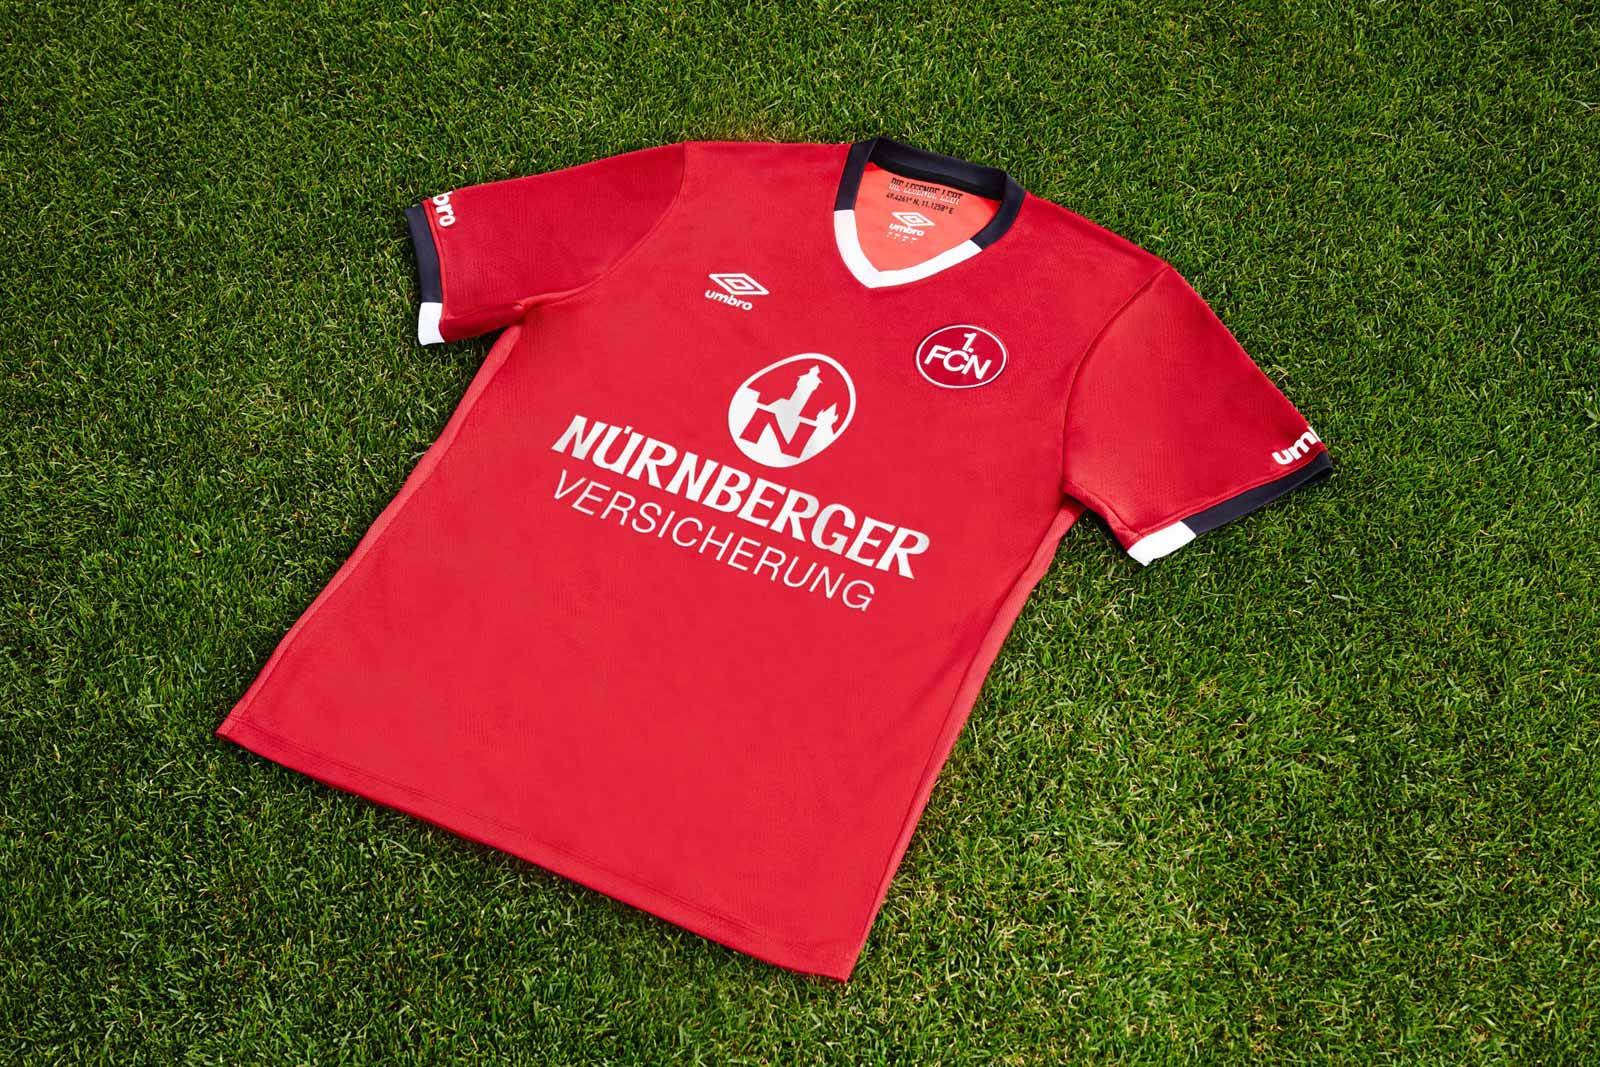 umbro-nurnberg-16-17-kits-pref-banner